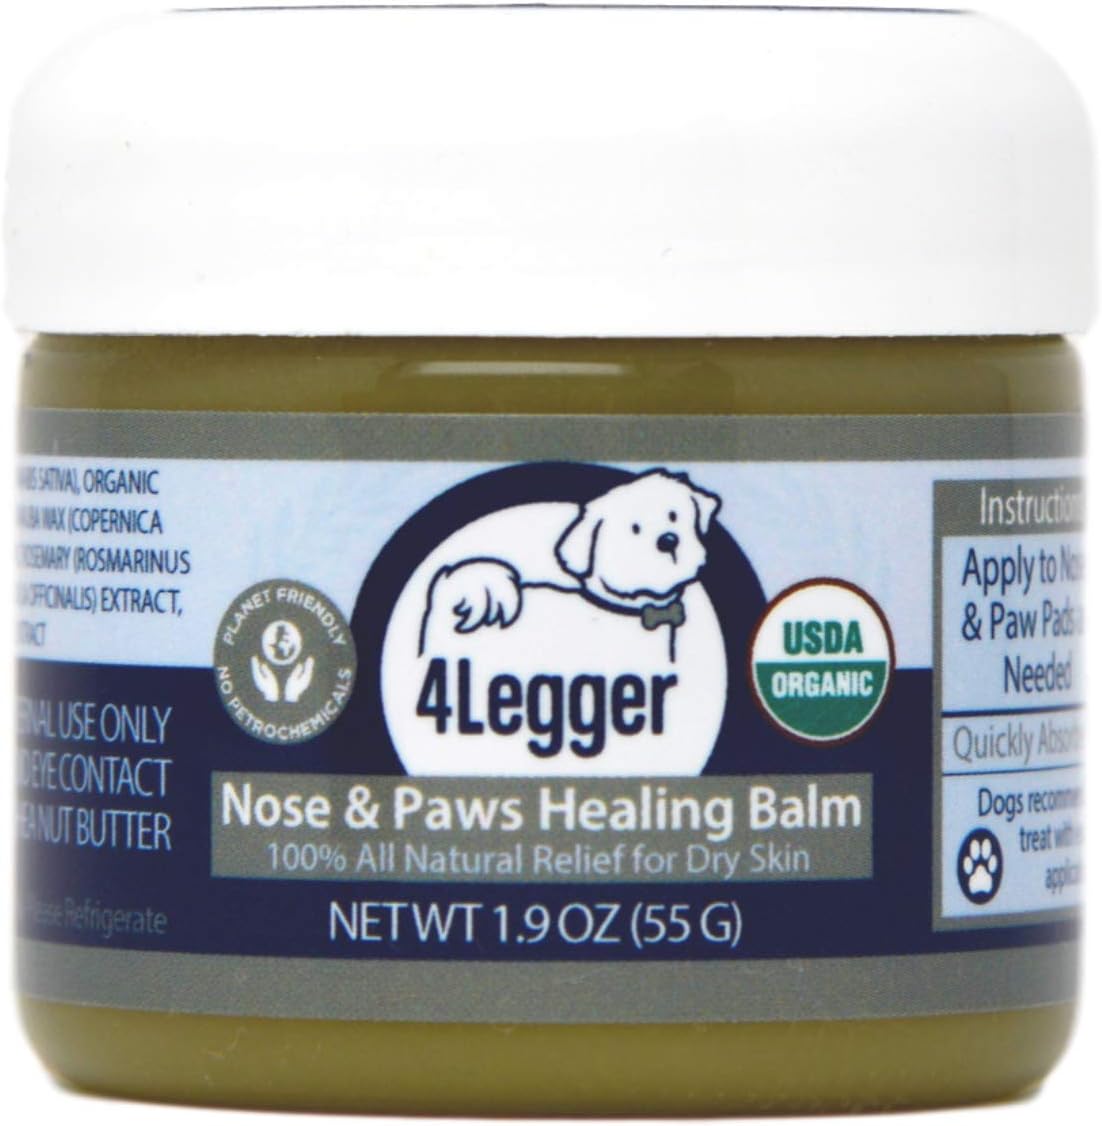 7. 4Legger Certified Organic Nose & Paw Pad Healing Balm